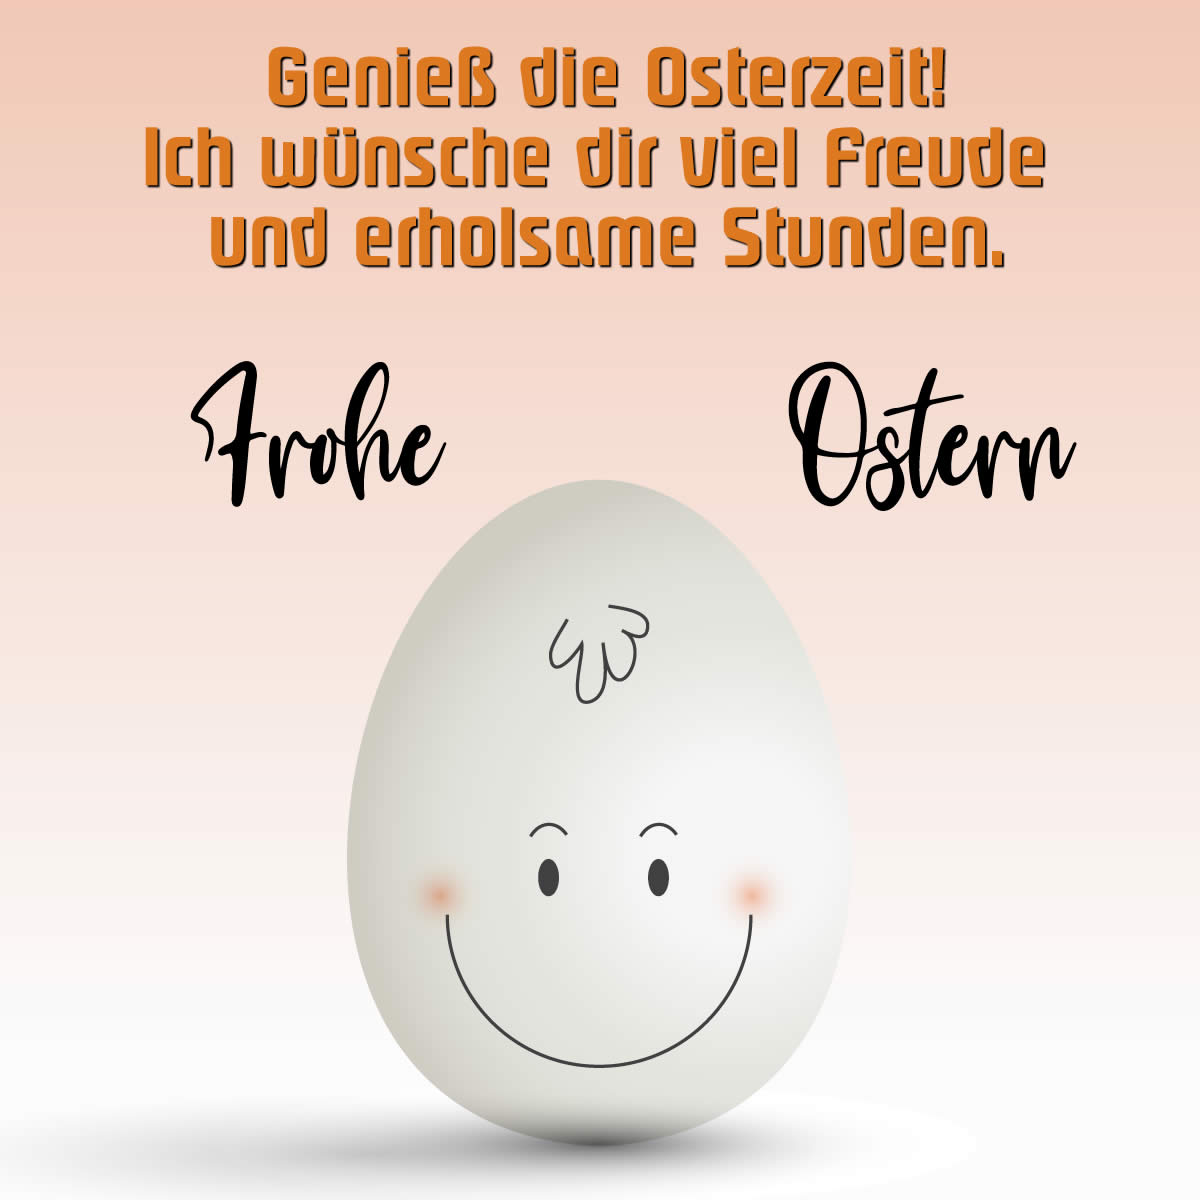 Bild mit einem niedlichen lächelnden Ei mit einer netten Grußbotschaft: Genieß die Osterzeit!Ich wünsche dir viel Freude und erholsame Stunden.Frohe Ostern!